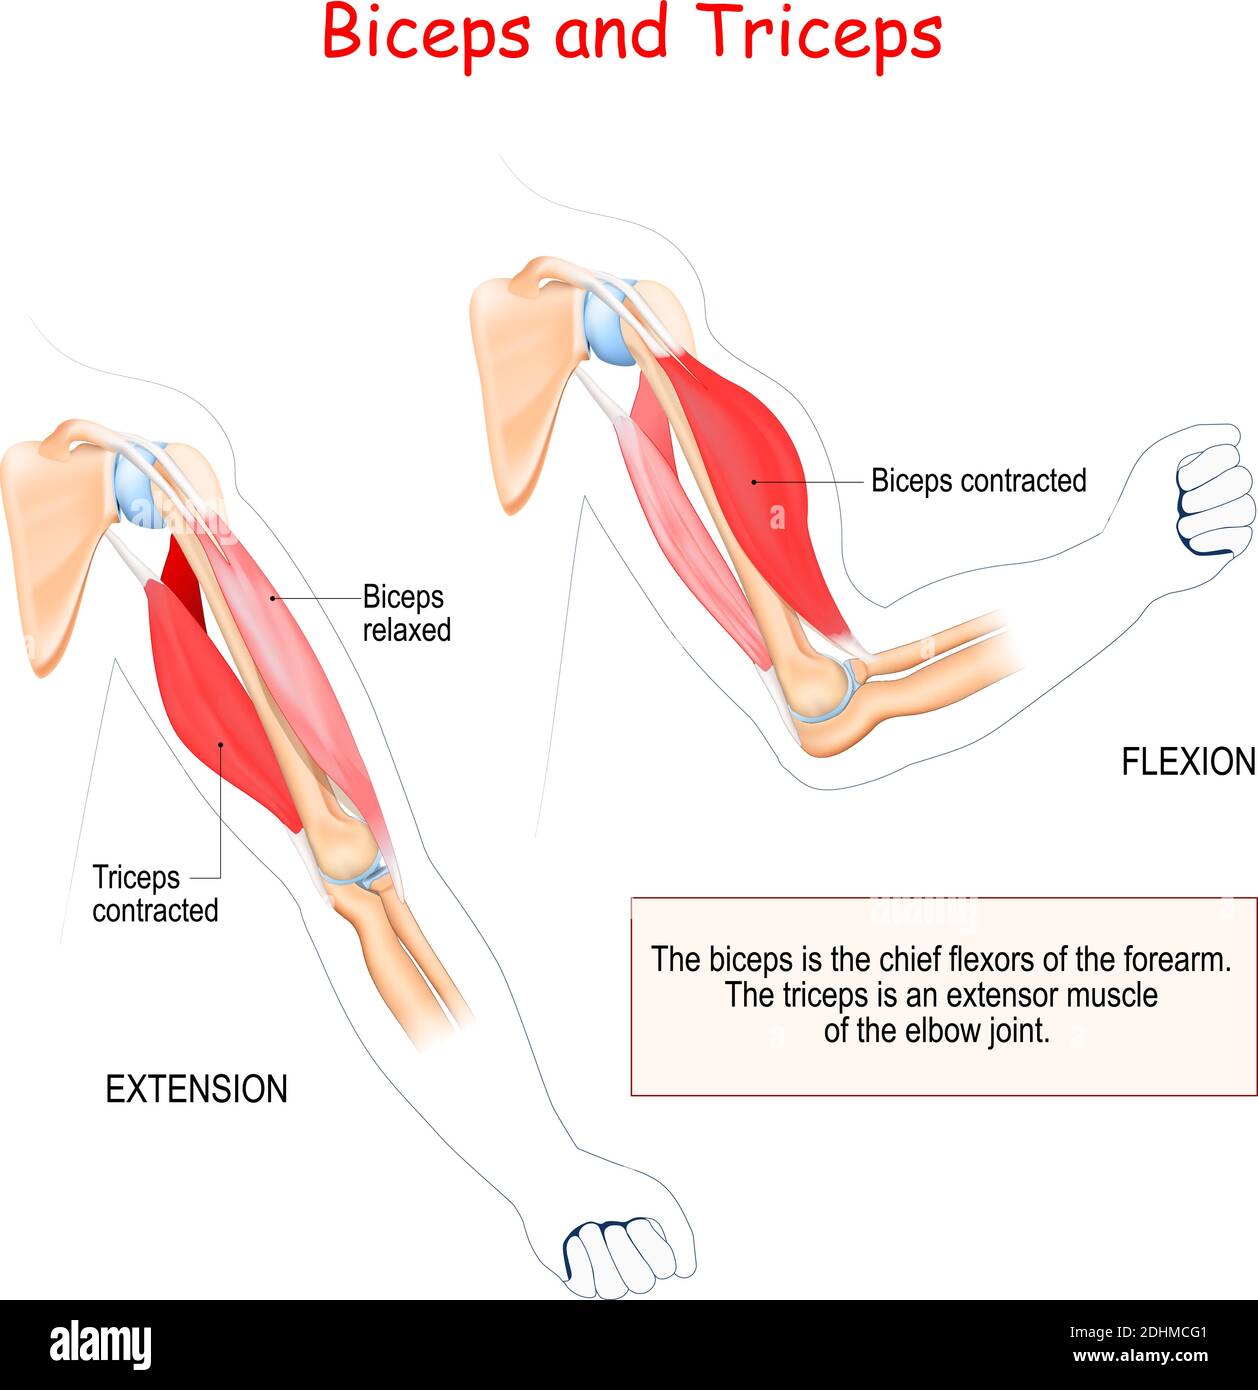 Bizeps und Trizeps. Antagonistische Muskeln. Der Bizeps ist der Hauptbeuger des Unterarms. Der Trizeps ist ein Dehnungsmuskel des Ellenbogengelenks. Stock Vektor